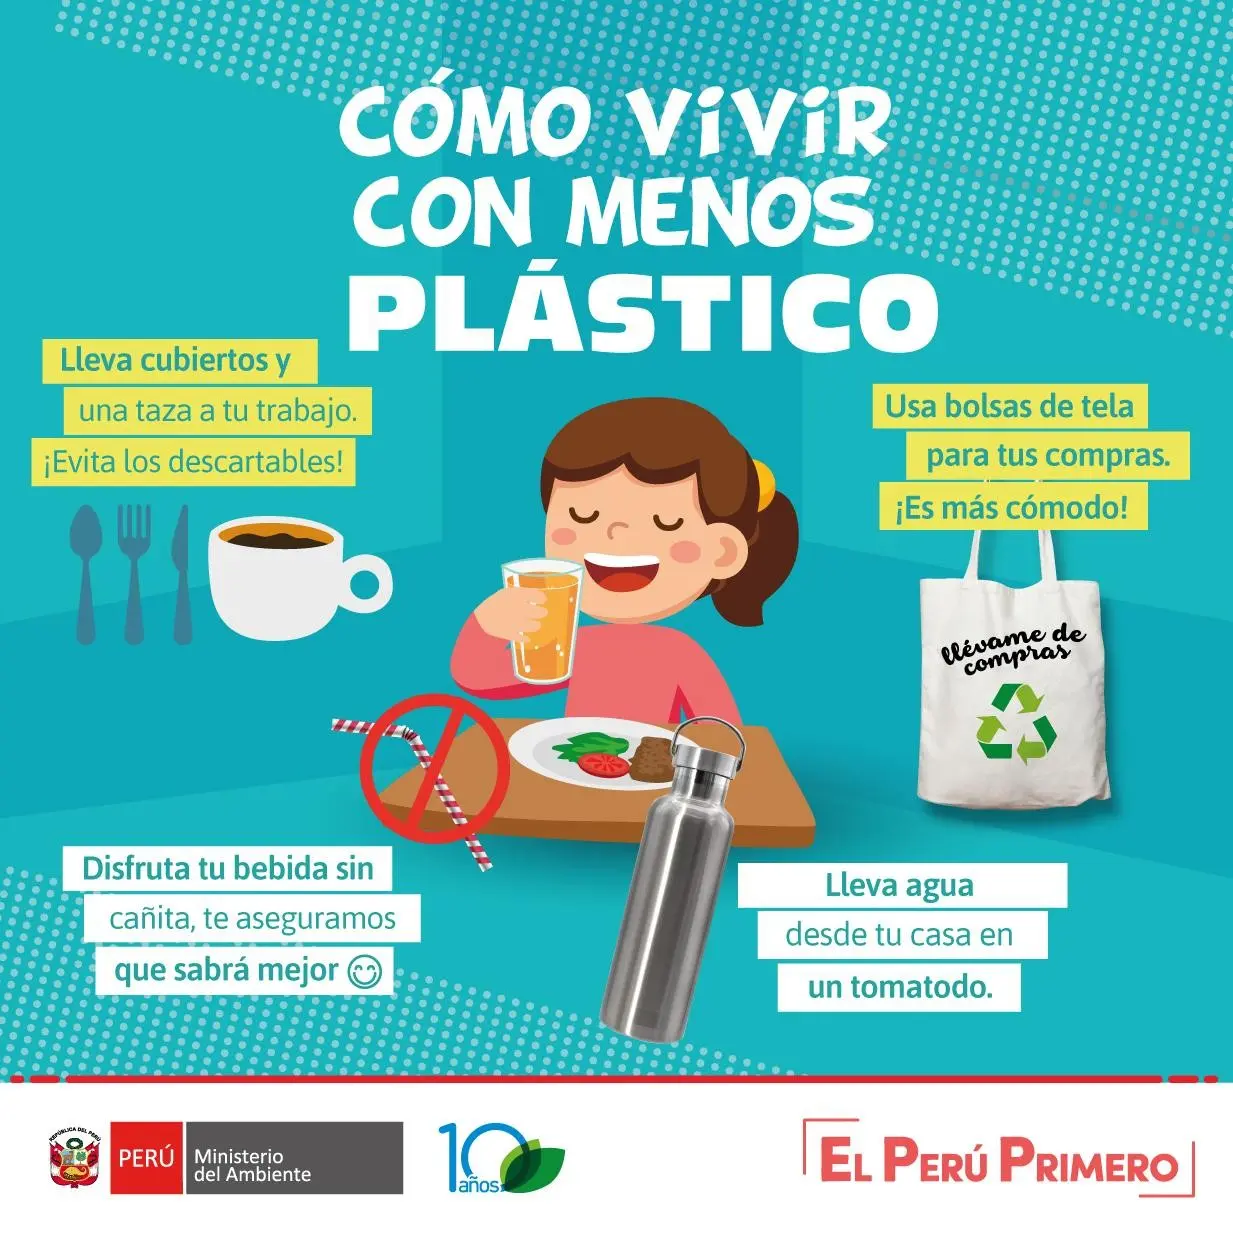 menos plastico mas vida - Cómo debemos vivir con menos plástico